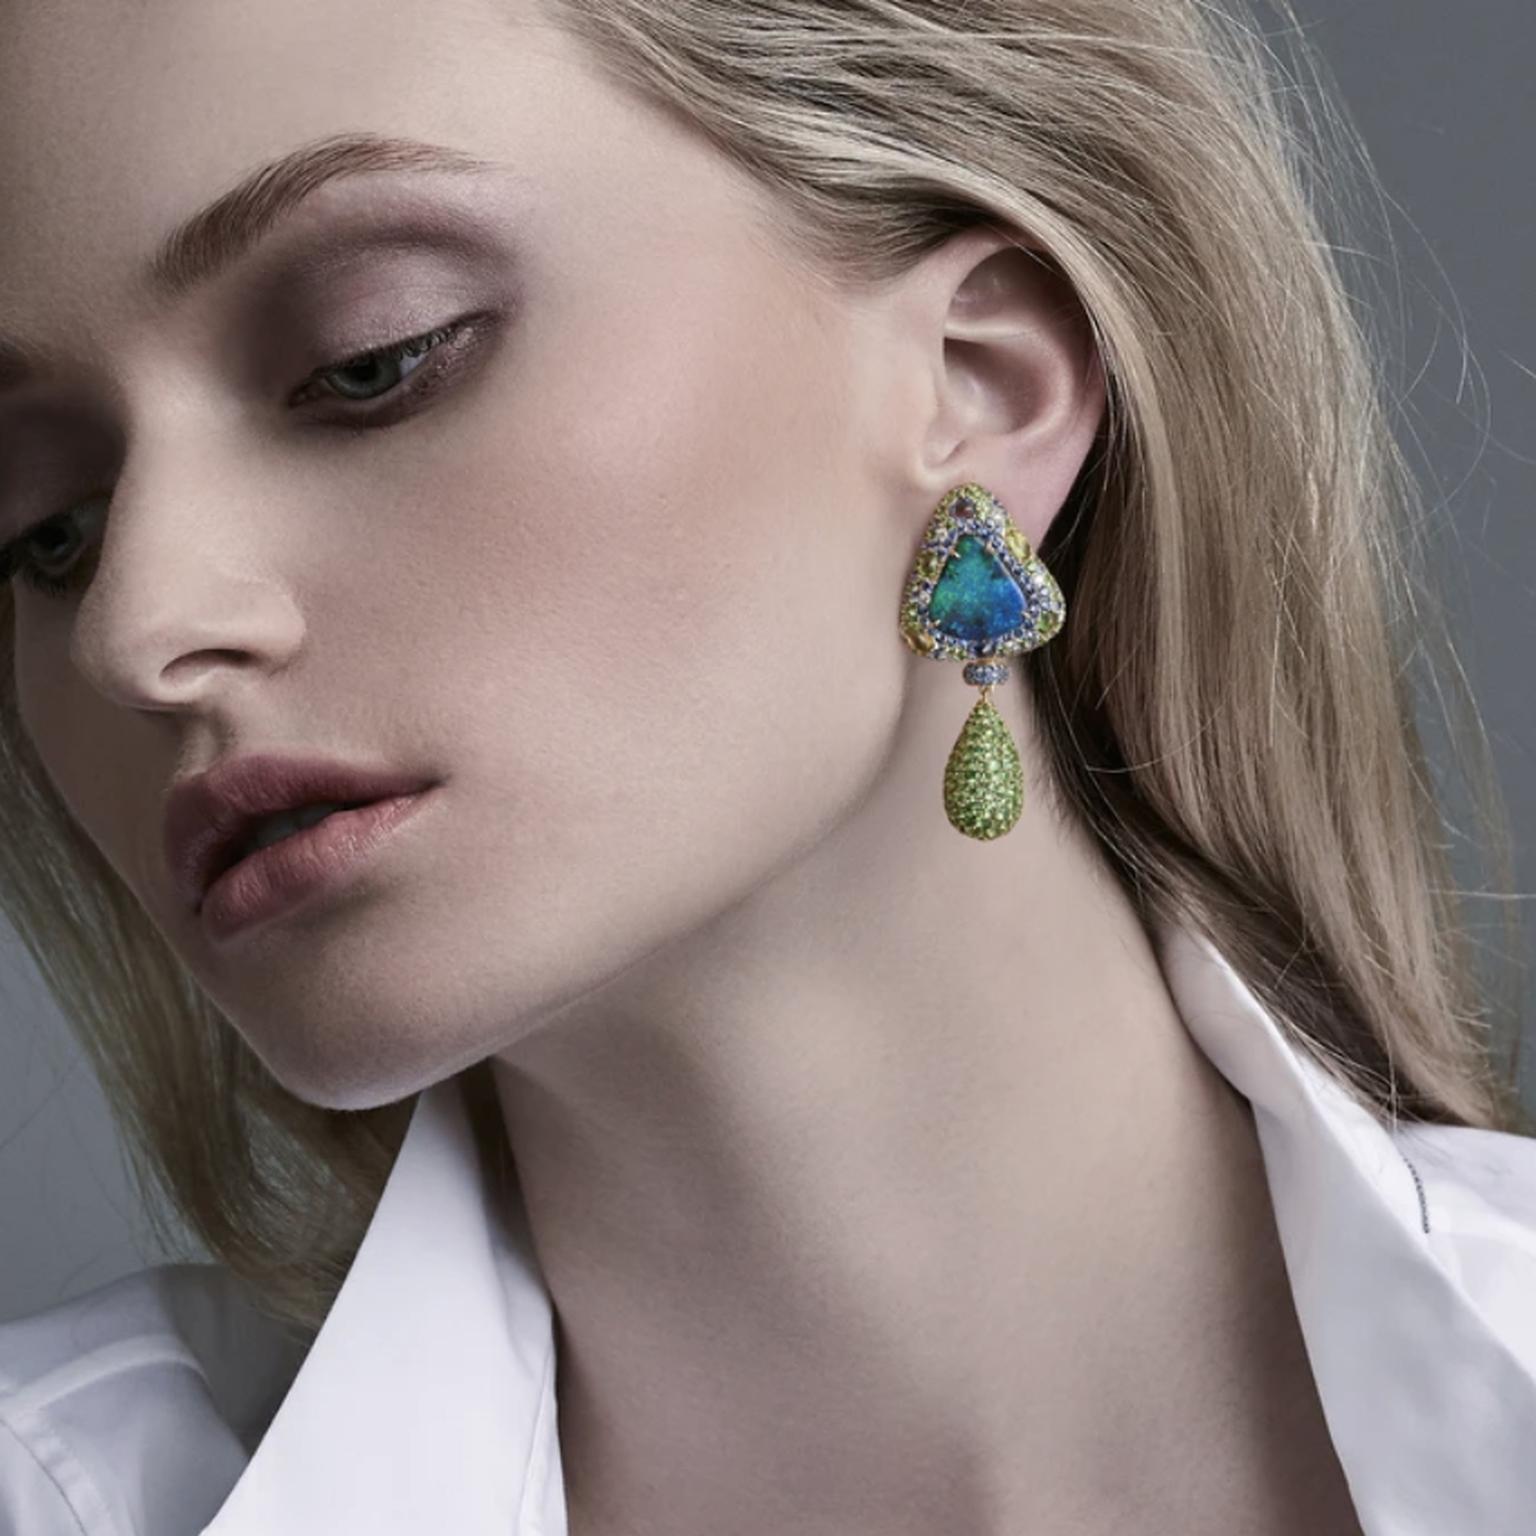 Opal earrings by Margot McKinney on Model